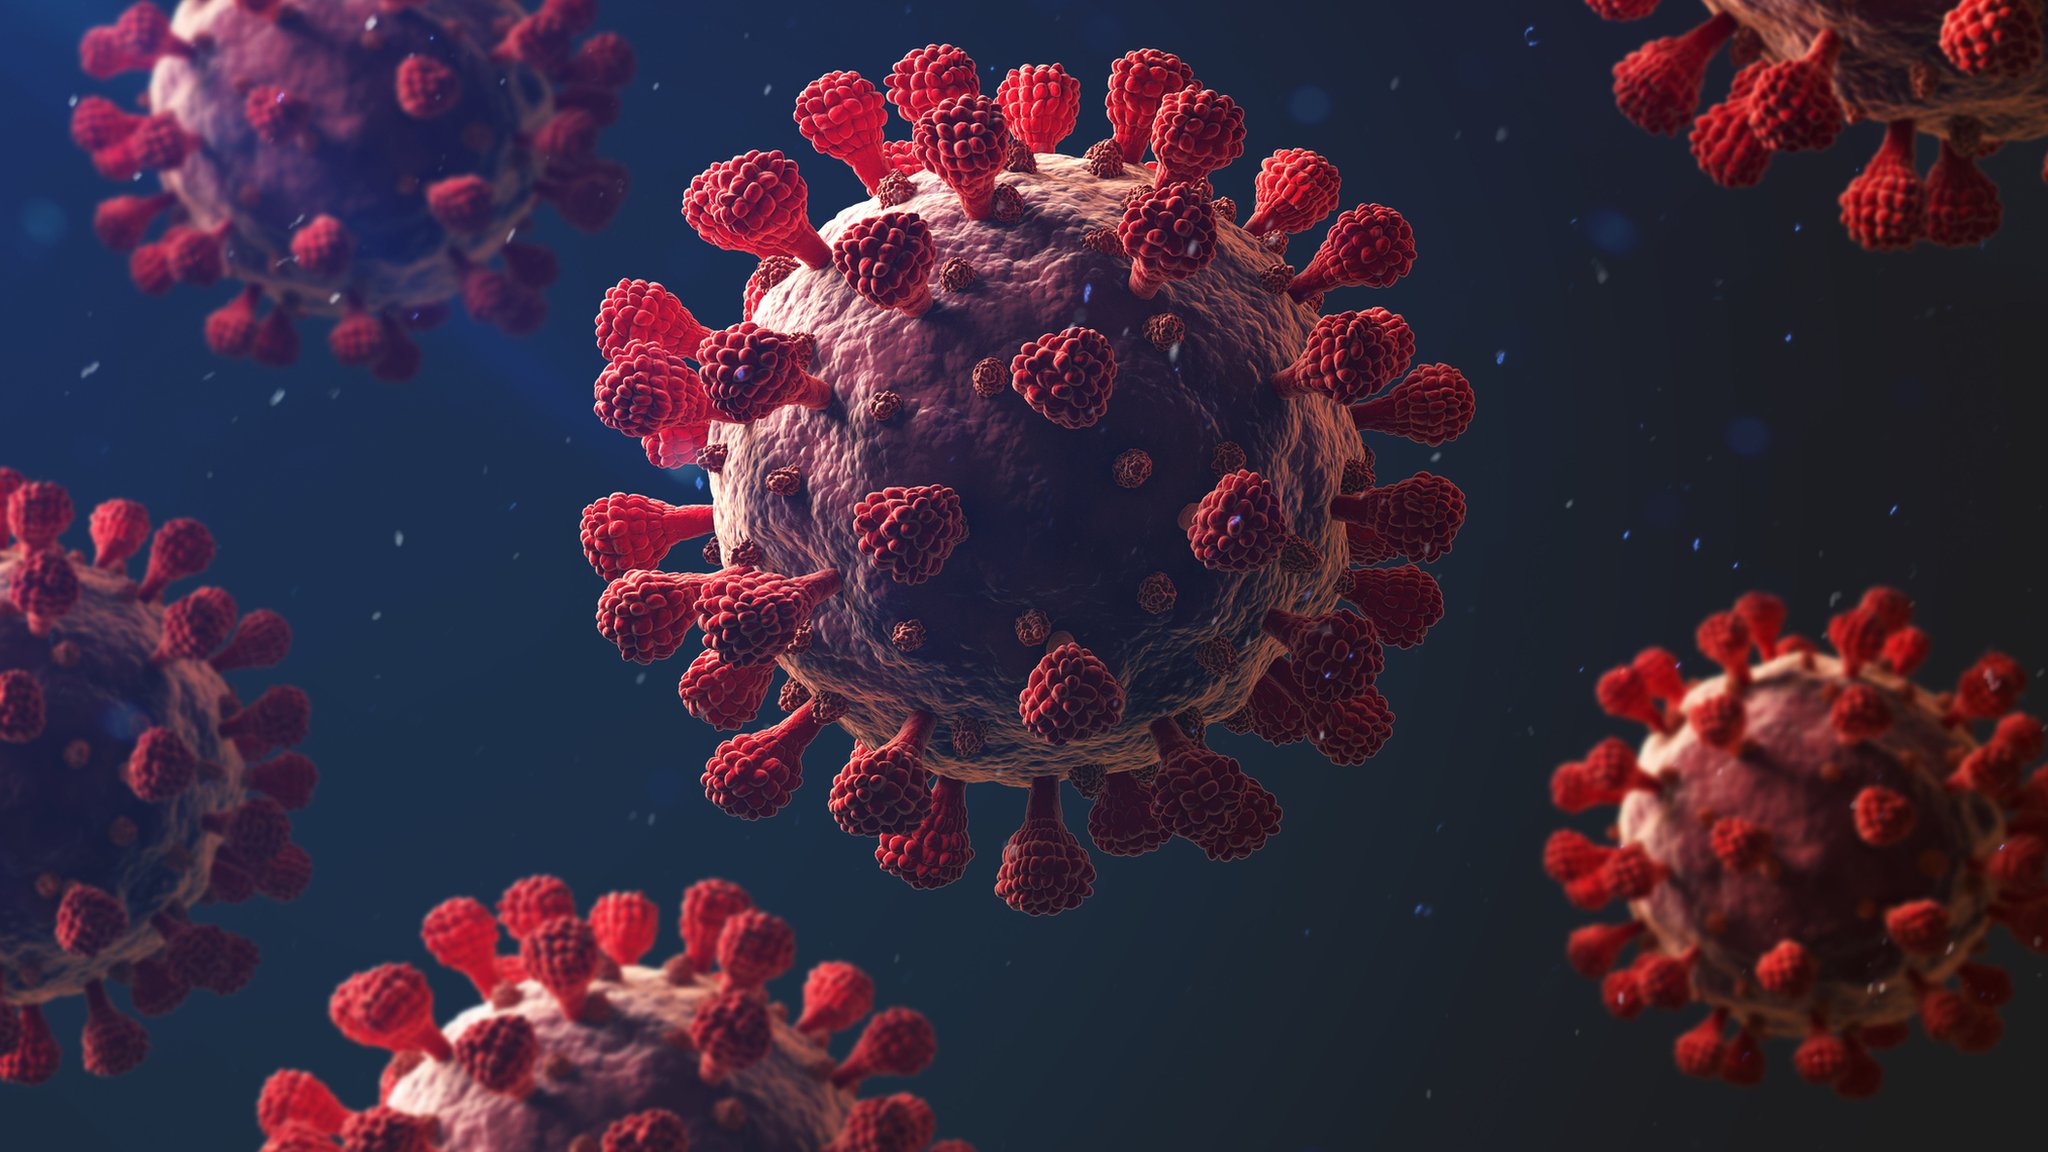 El origen del virus SARS-CoV-2 y la ecoepidemiología de la COVID-19